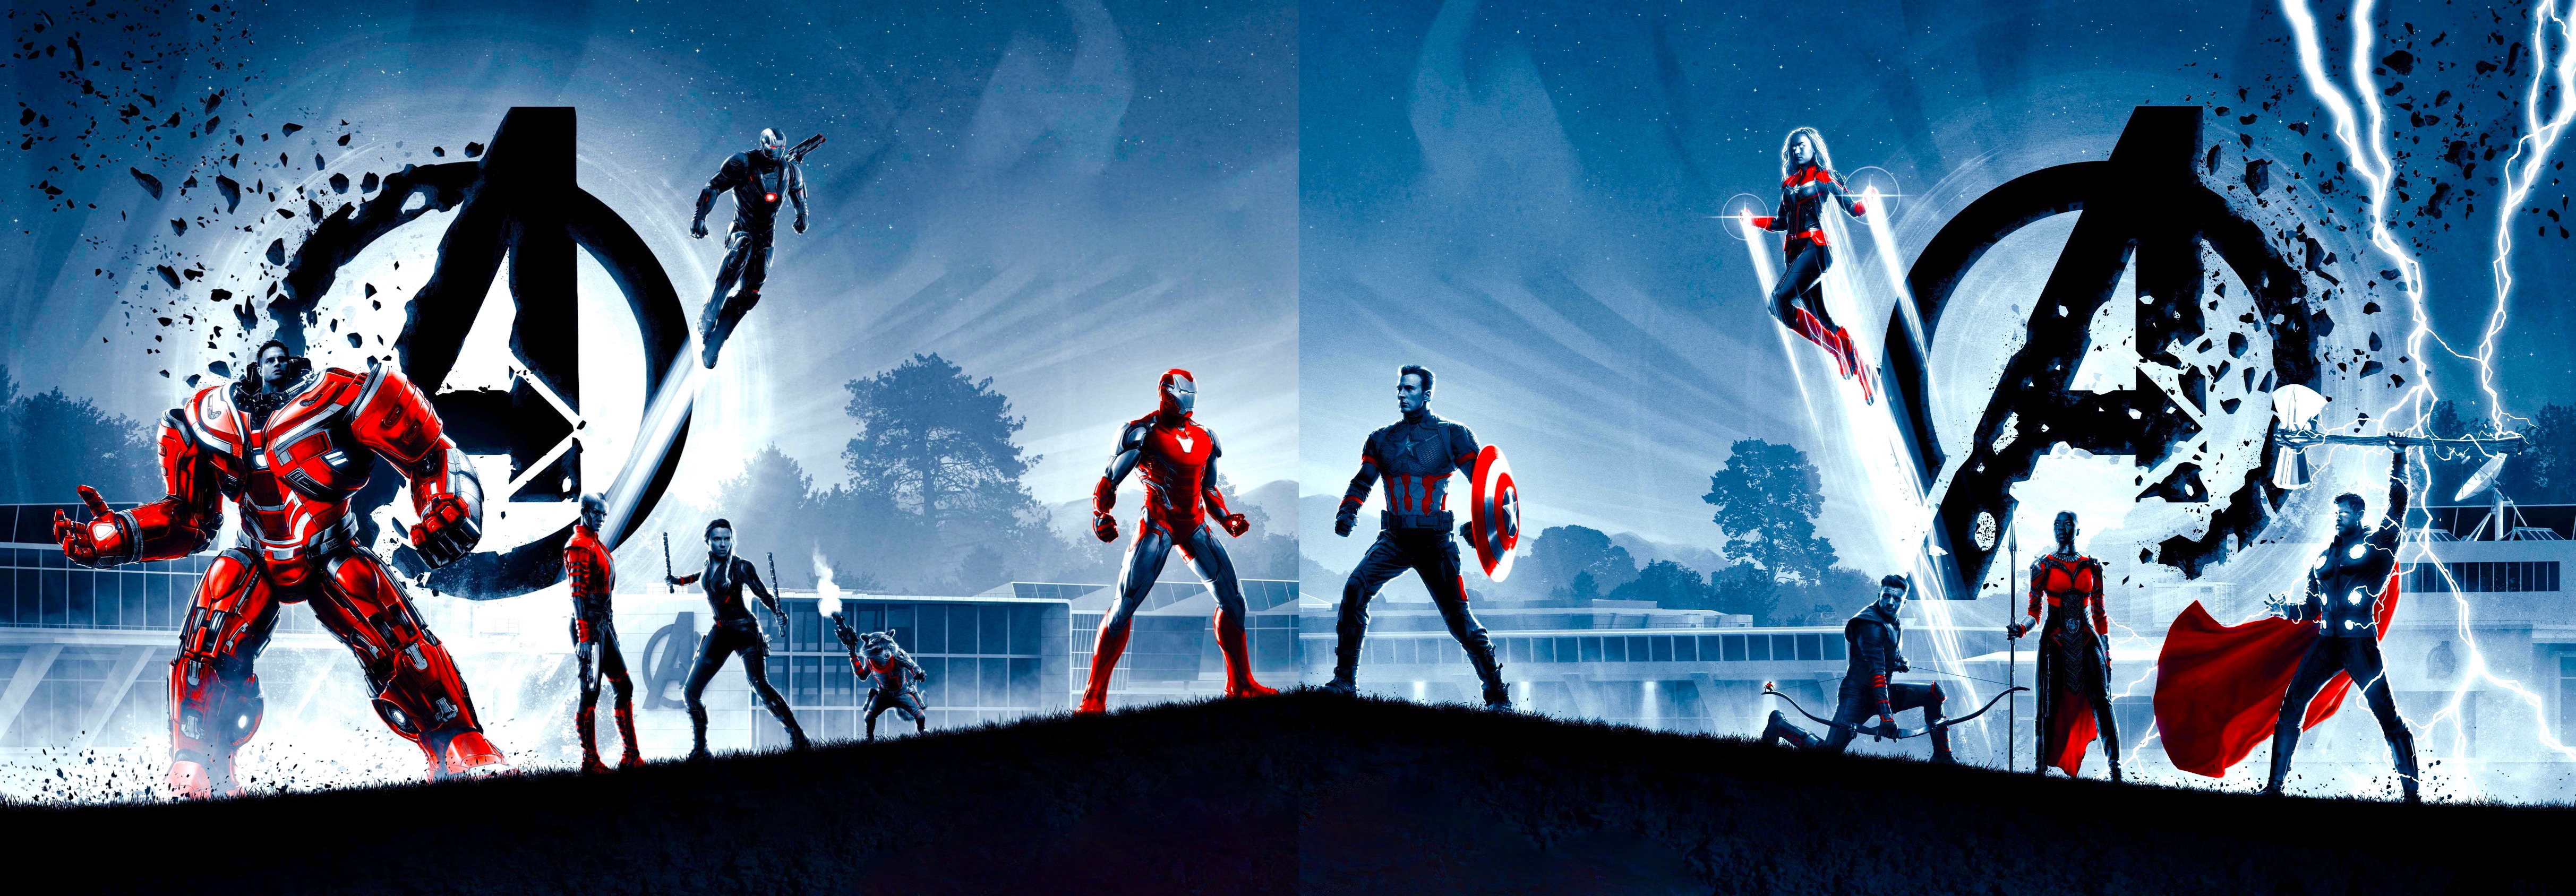 Avengers Avengers Endgame Black Widow Bruce Banner Captain America Captain Marvel Hawkeye Hulkbuster 4851x1688